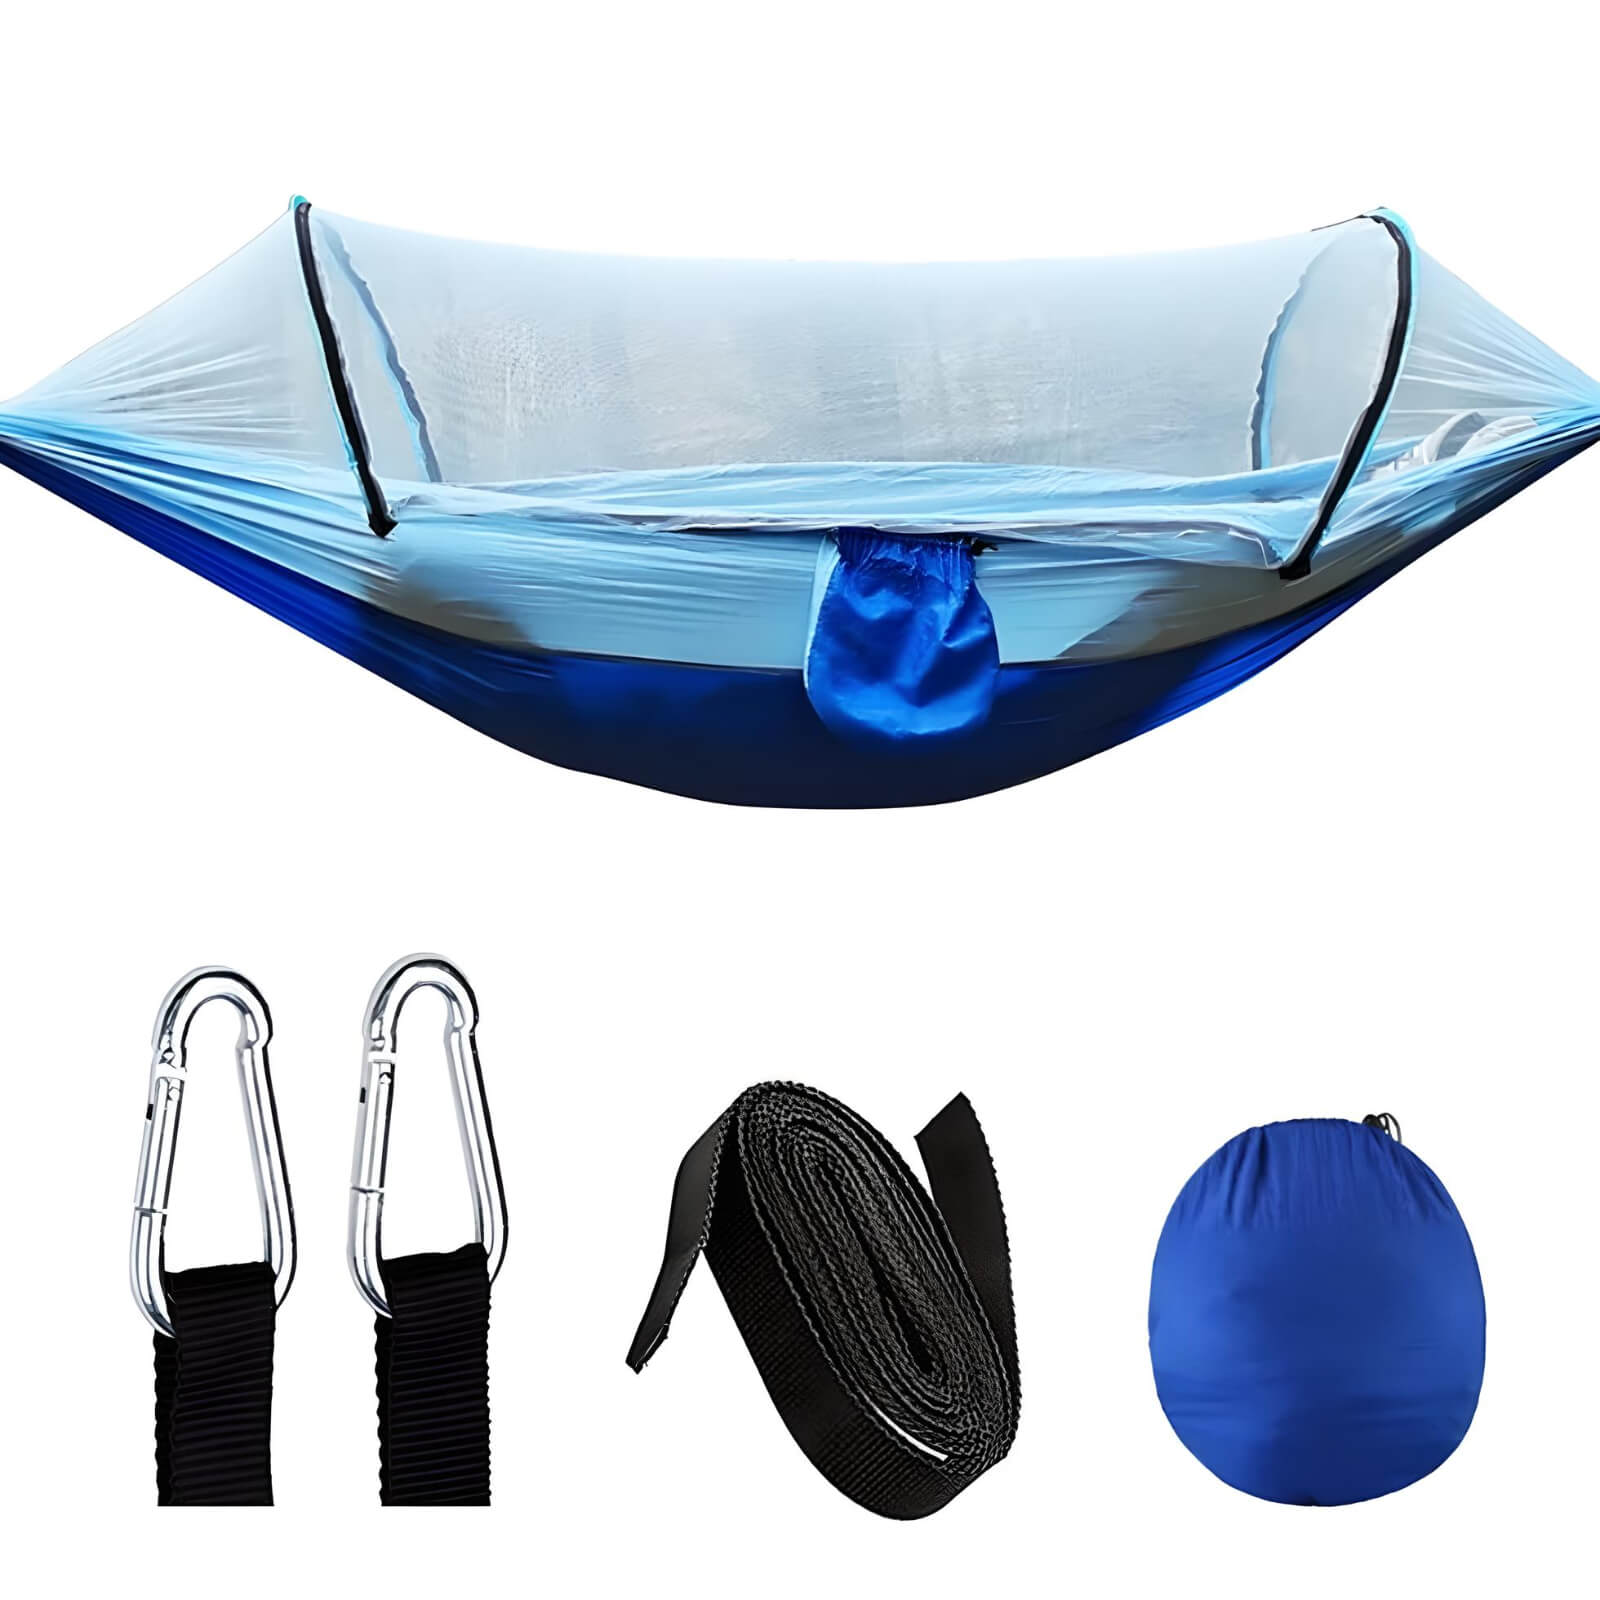    hammock-netting-in-blue